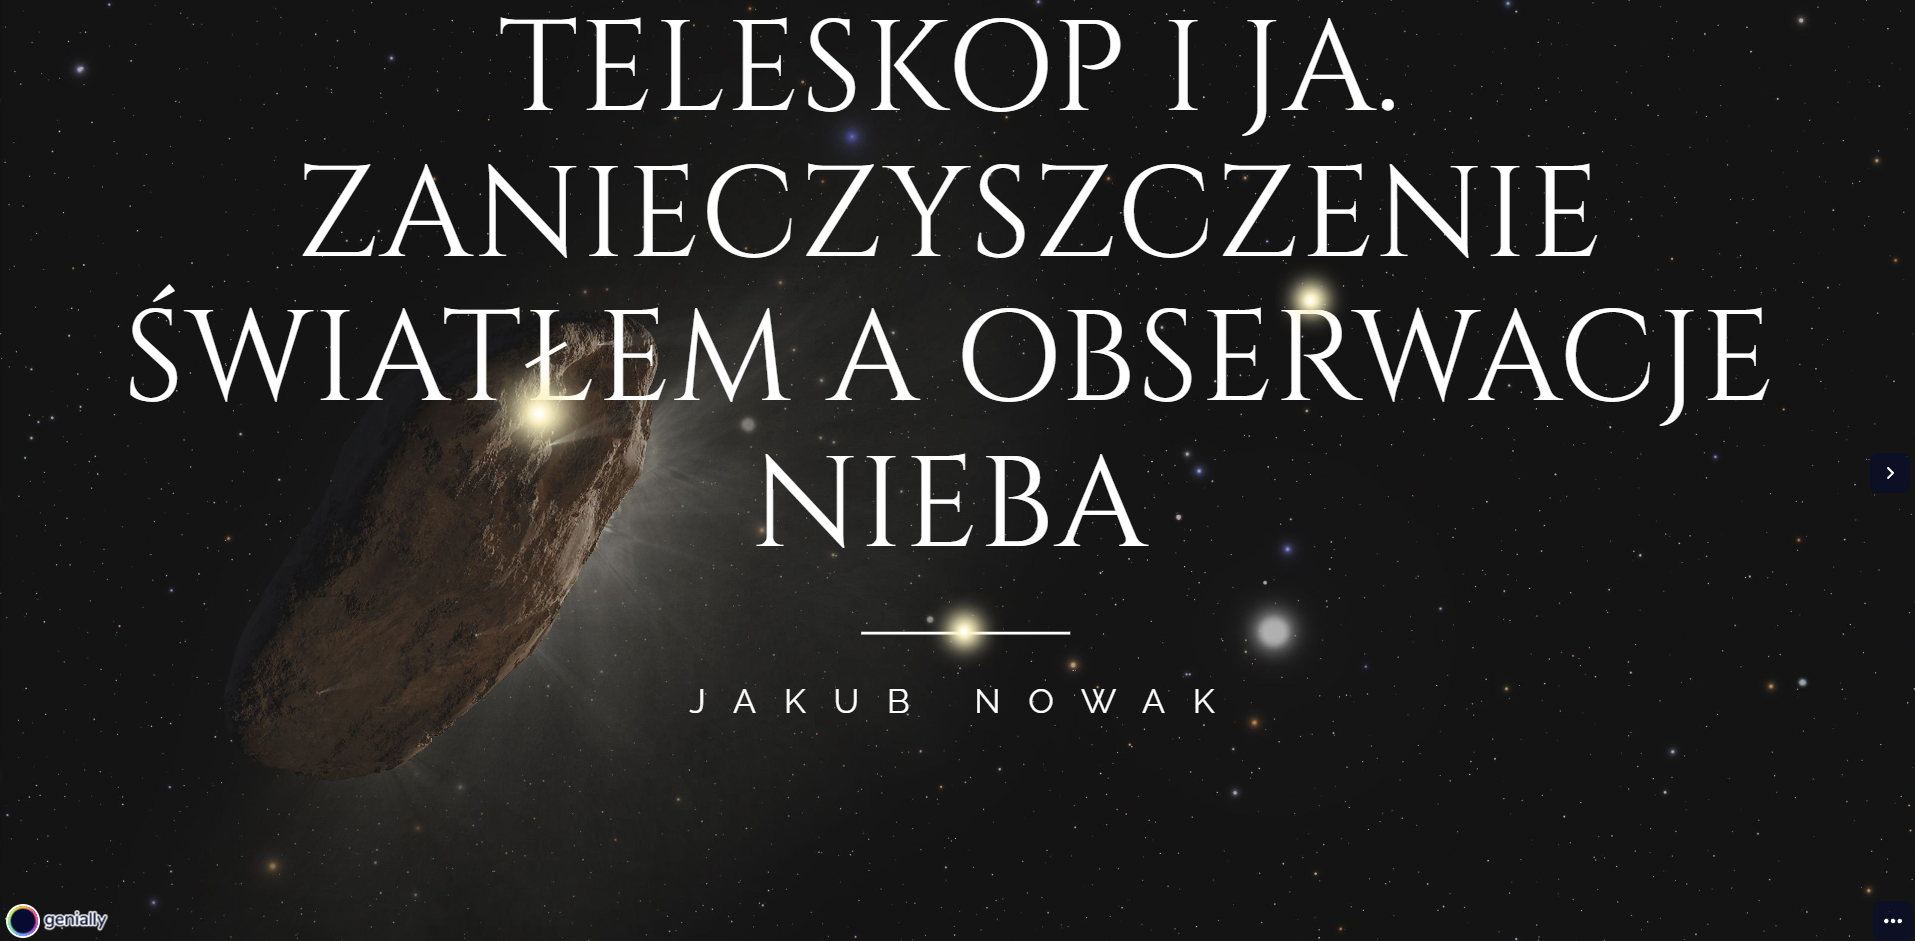 Jakub Nowak - uczeń Szkoły Podstawowej nr 30 w ZSO nr 5 w Gliwicach.